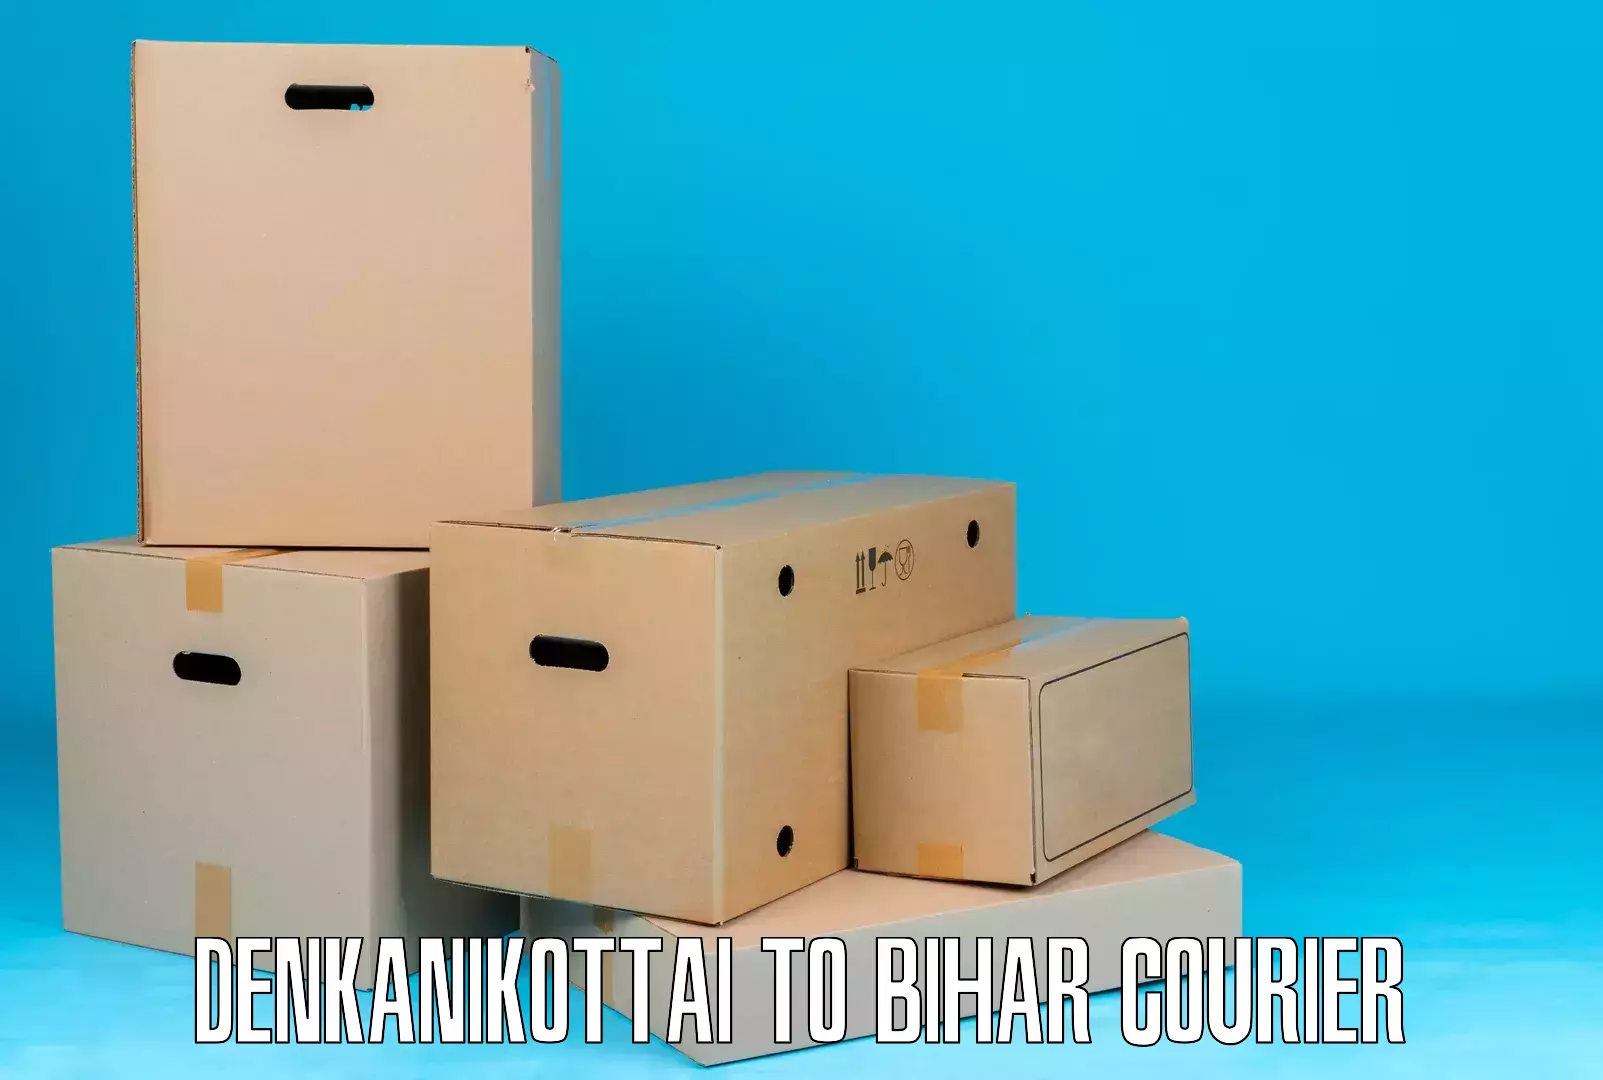 Online package tracking Denkanikottai to Chakia